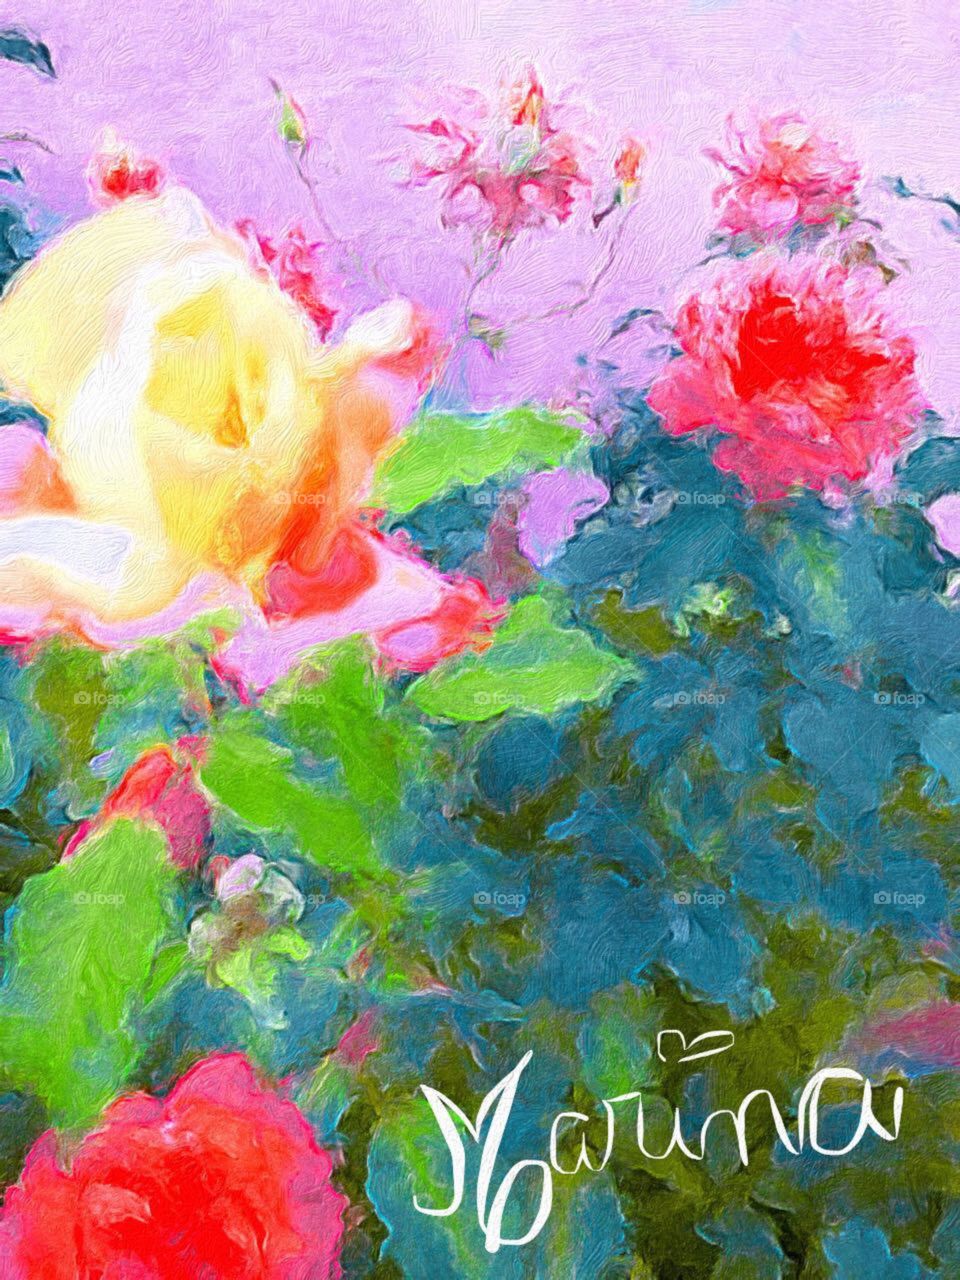 Arte da Marininha.
Uma simples foto do #jardim de transforma numa #pintura.
Devo enquadrar essa obra de arte?
🎨 
#flores #aquarela #cores #colorida #beleza